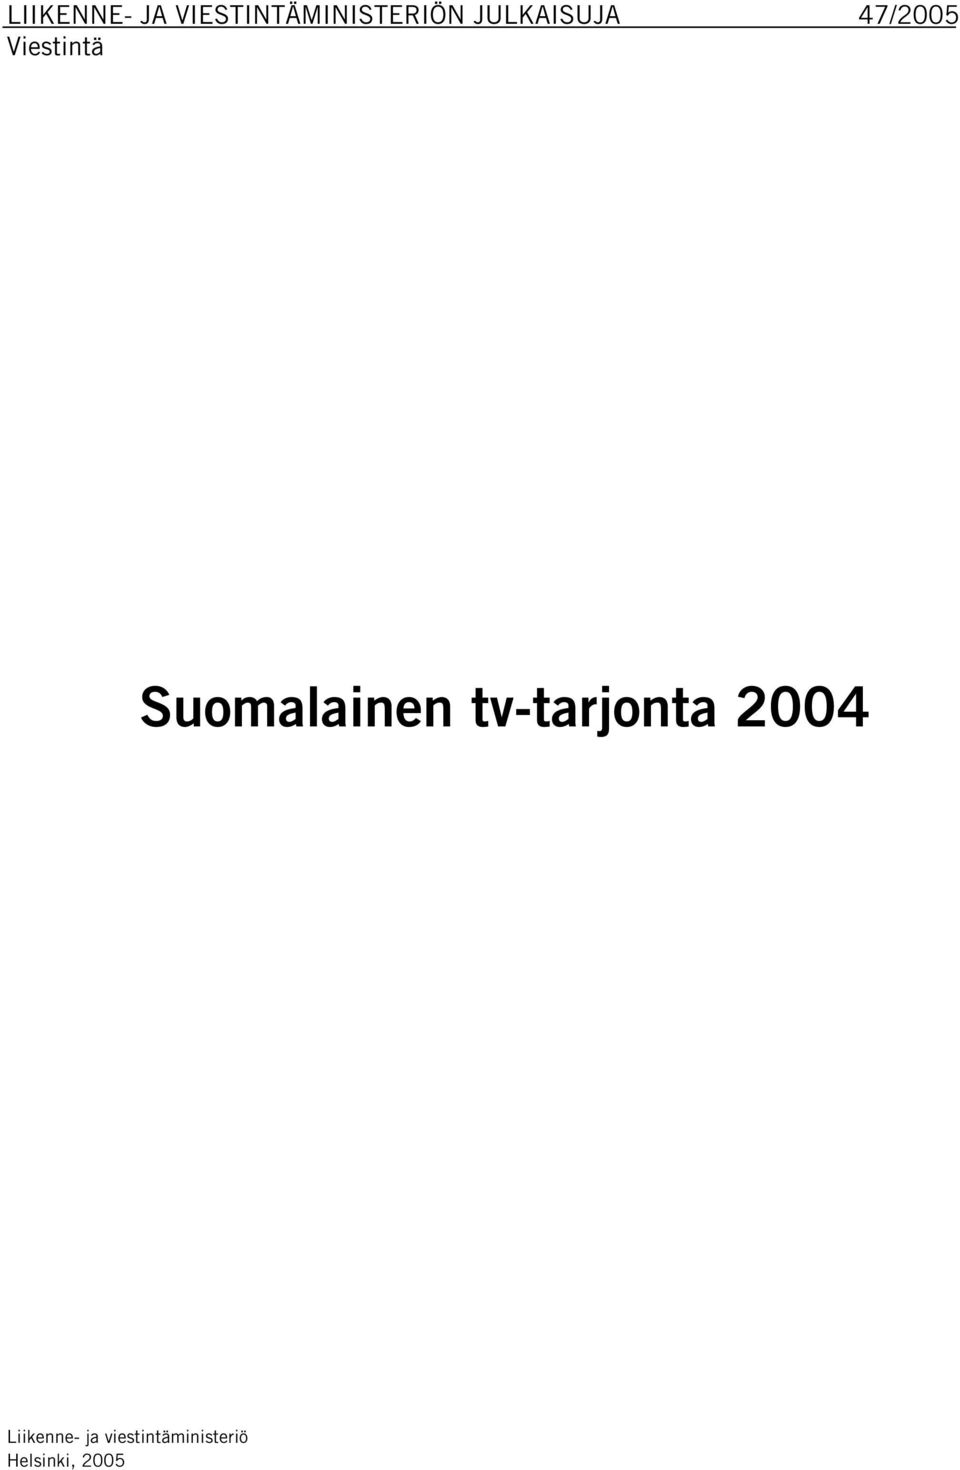 Suomalainen tv-tarjonta 2004